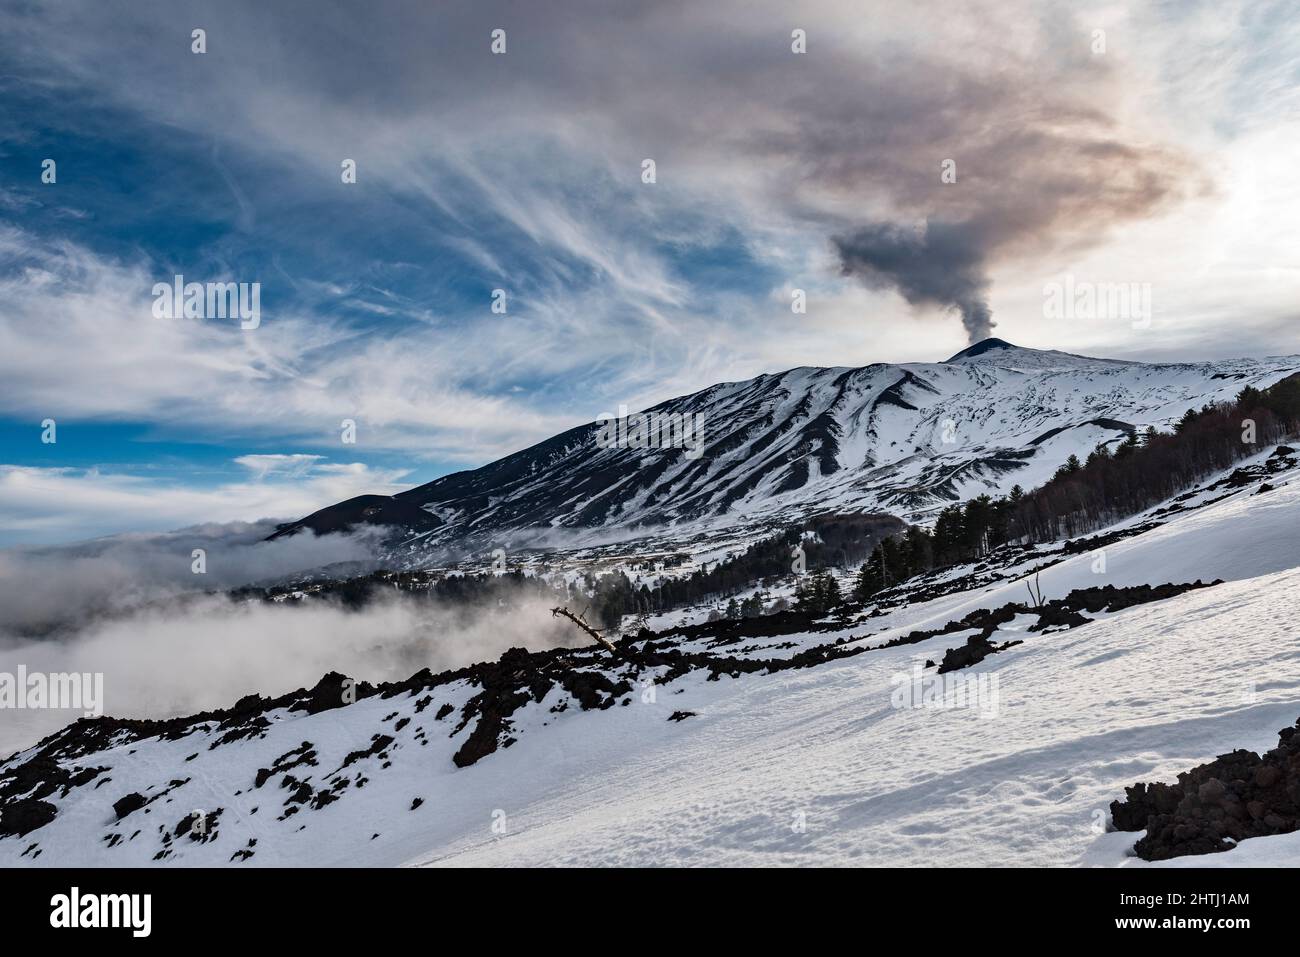 La cumbre del Monte Etna (3357m), Sicilia, Italia, vista a finales de invierno con el humo que vierte del cráter actualmente activo del sureste Foto de stock